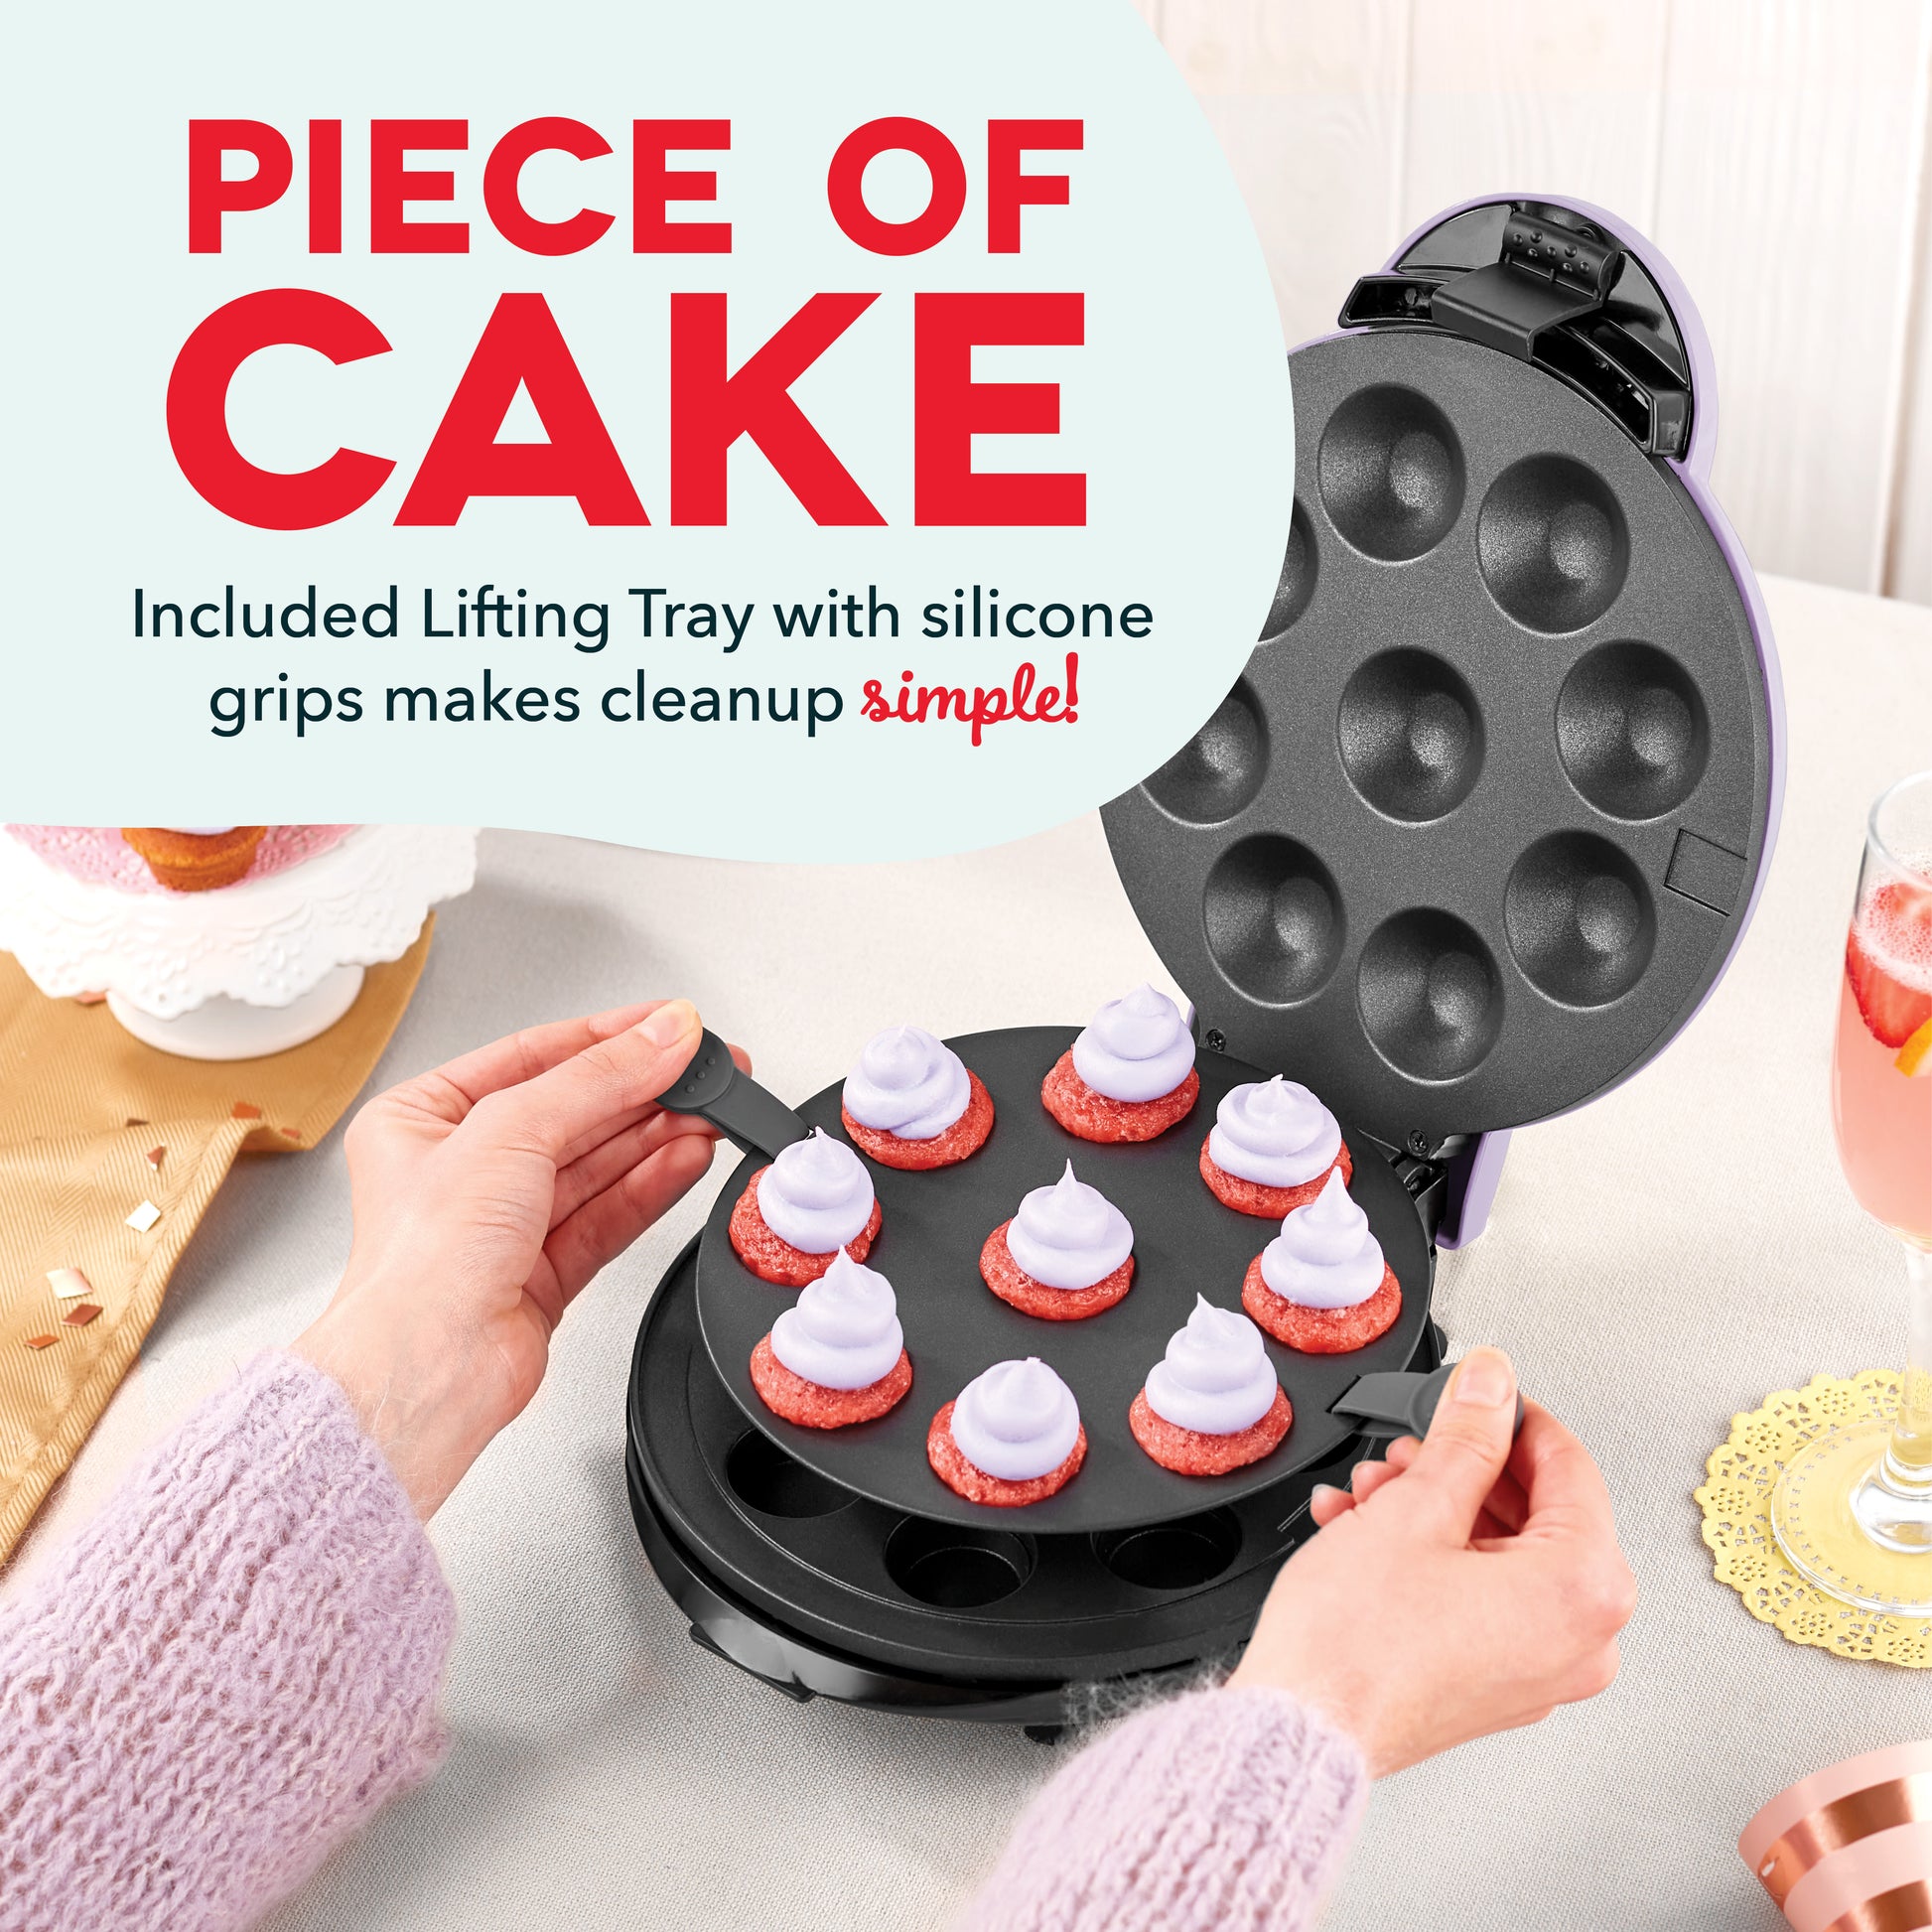 Dash Express Cupcake Maker simplifies holiday baking